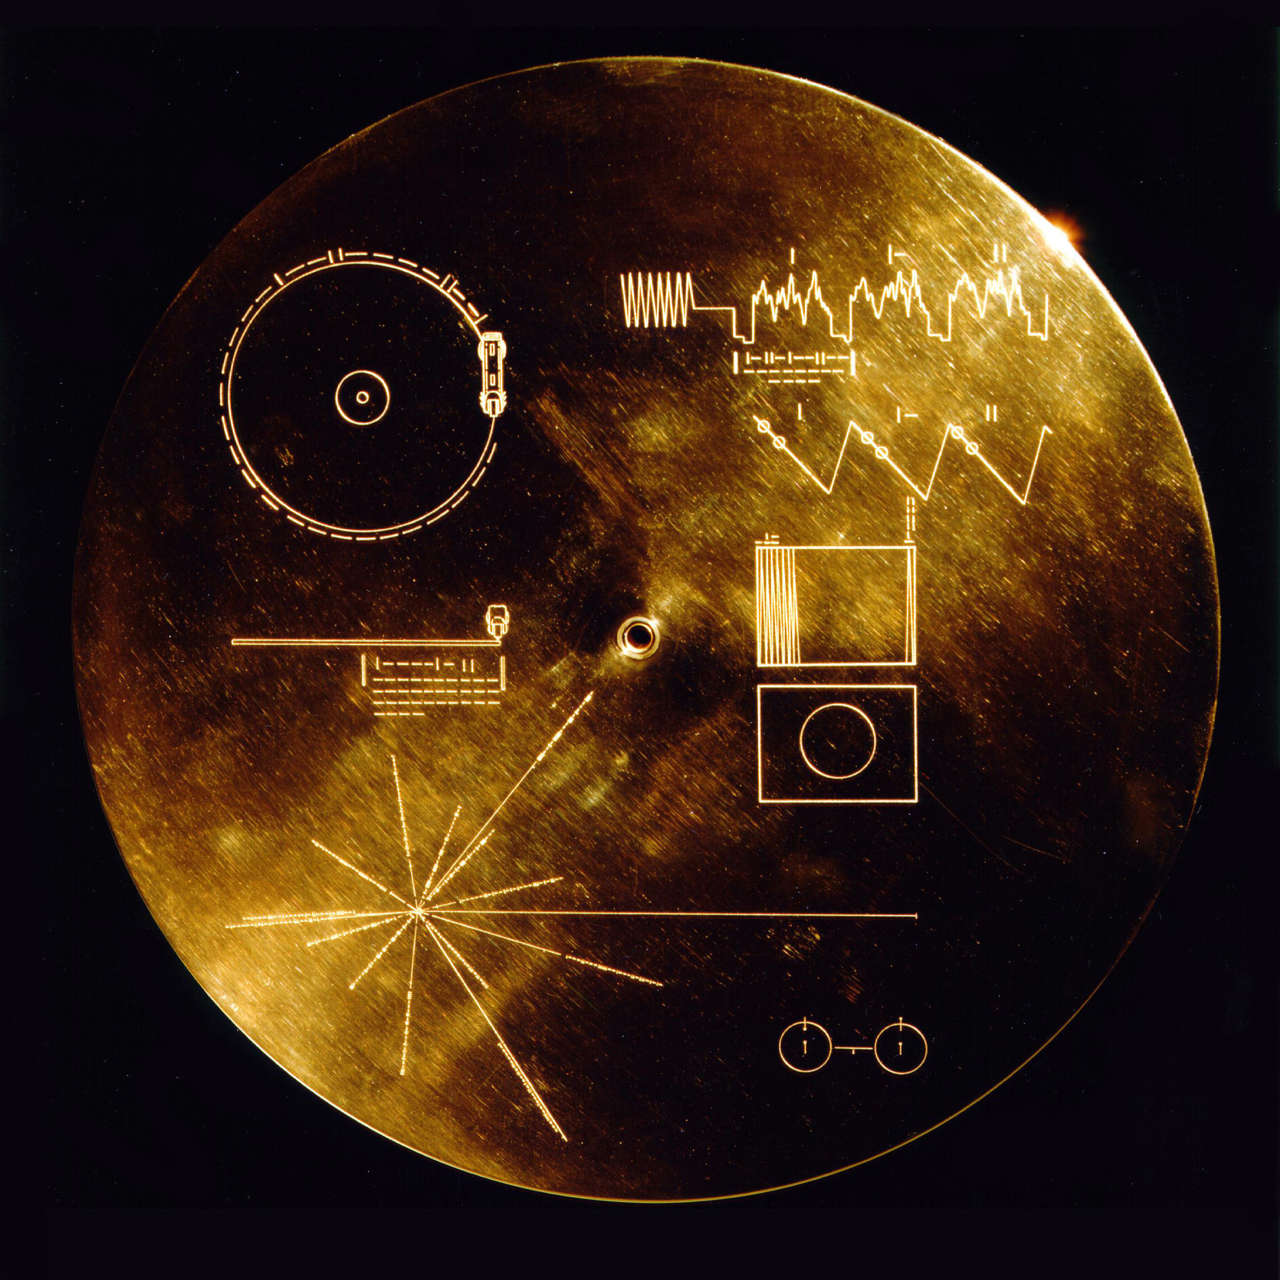 El disco de oro de la Voyager